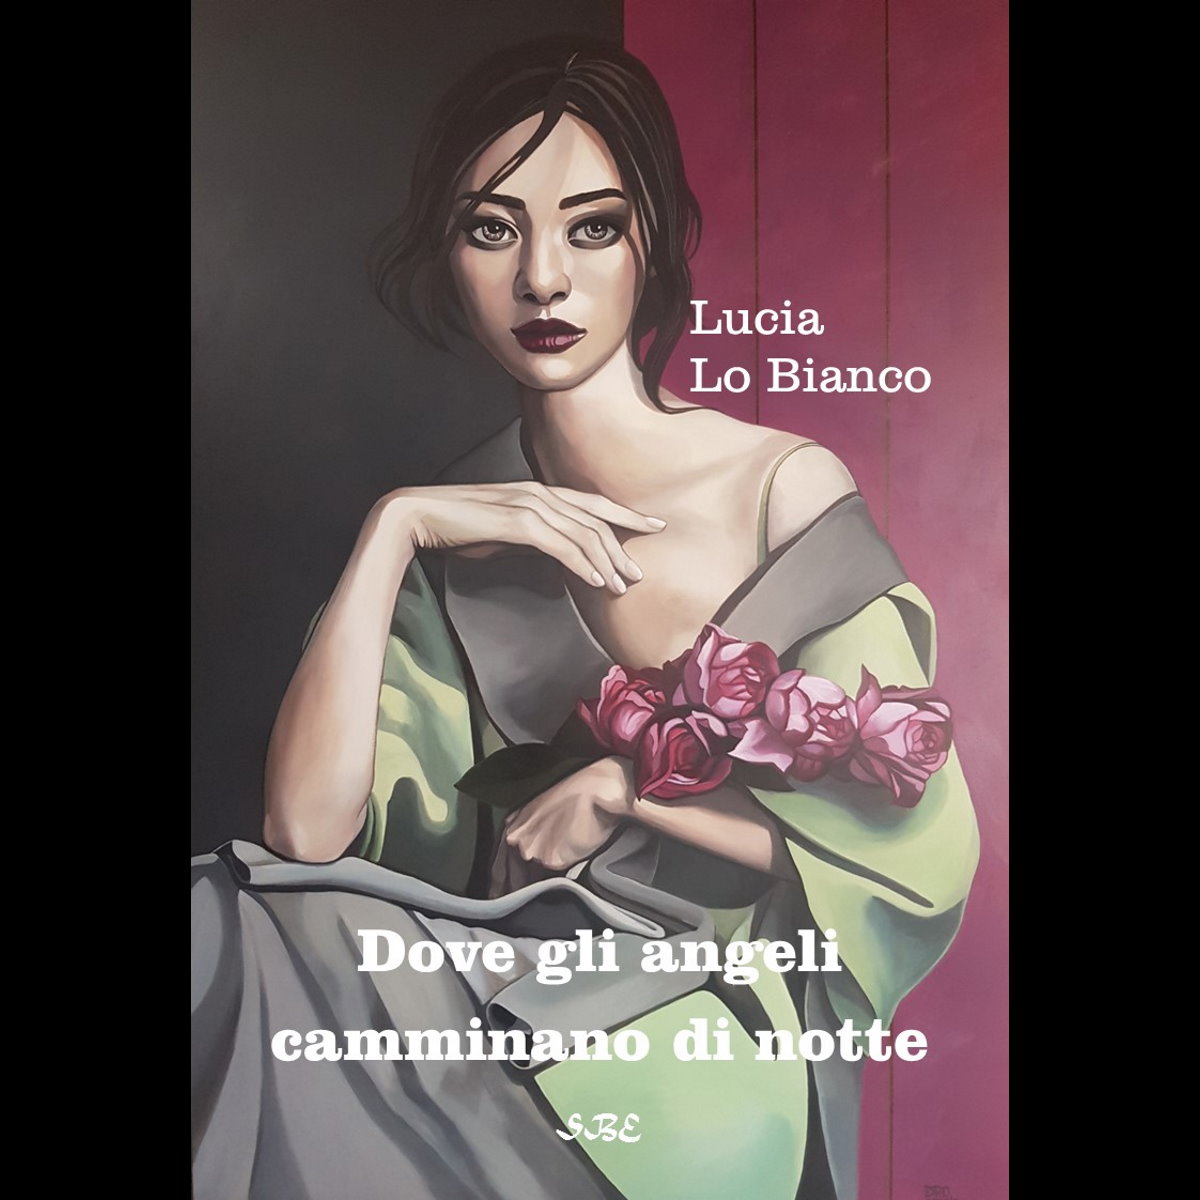 Dove gli angeli camminano d notte: Anteprima nazionale e presentazione alla stampa del romanzo di Lucia Lo Bianco